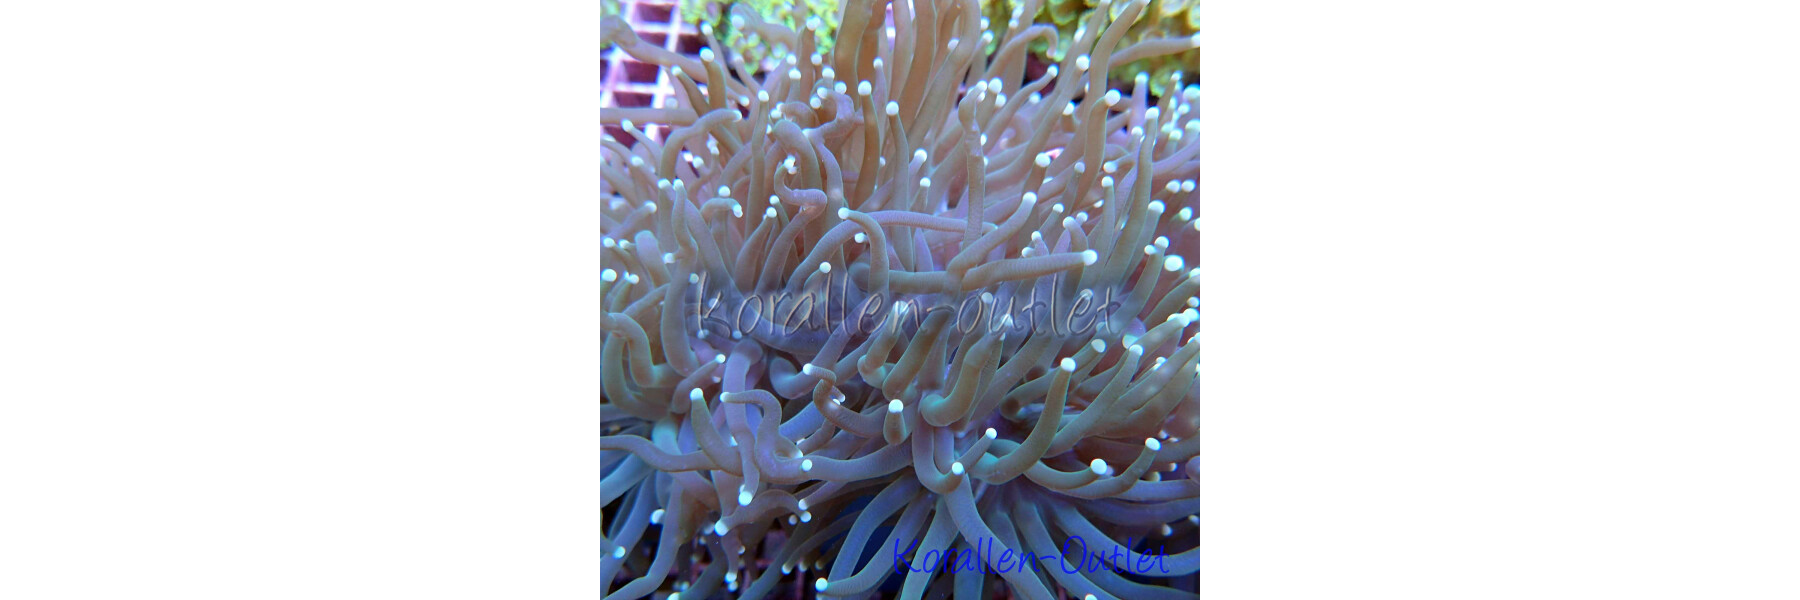 LPS corals